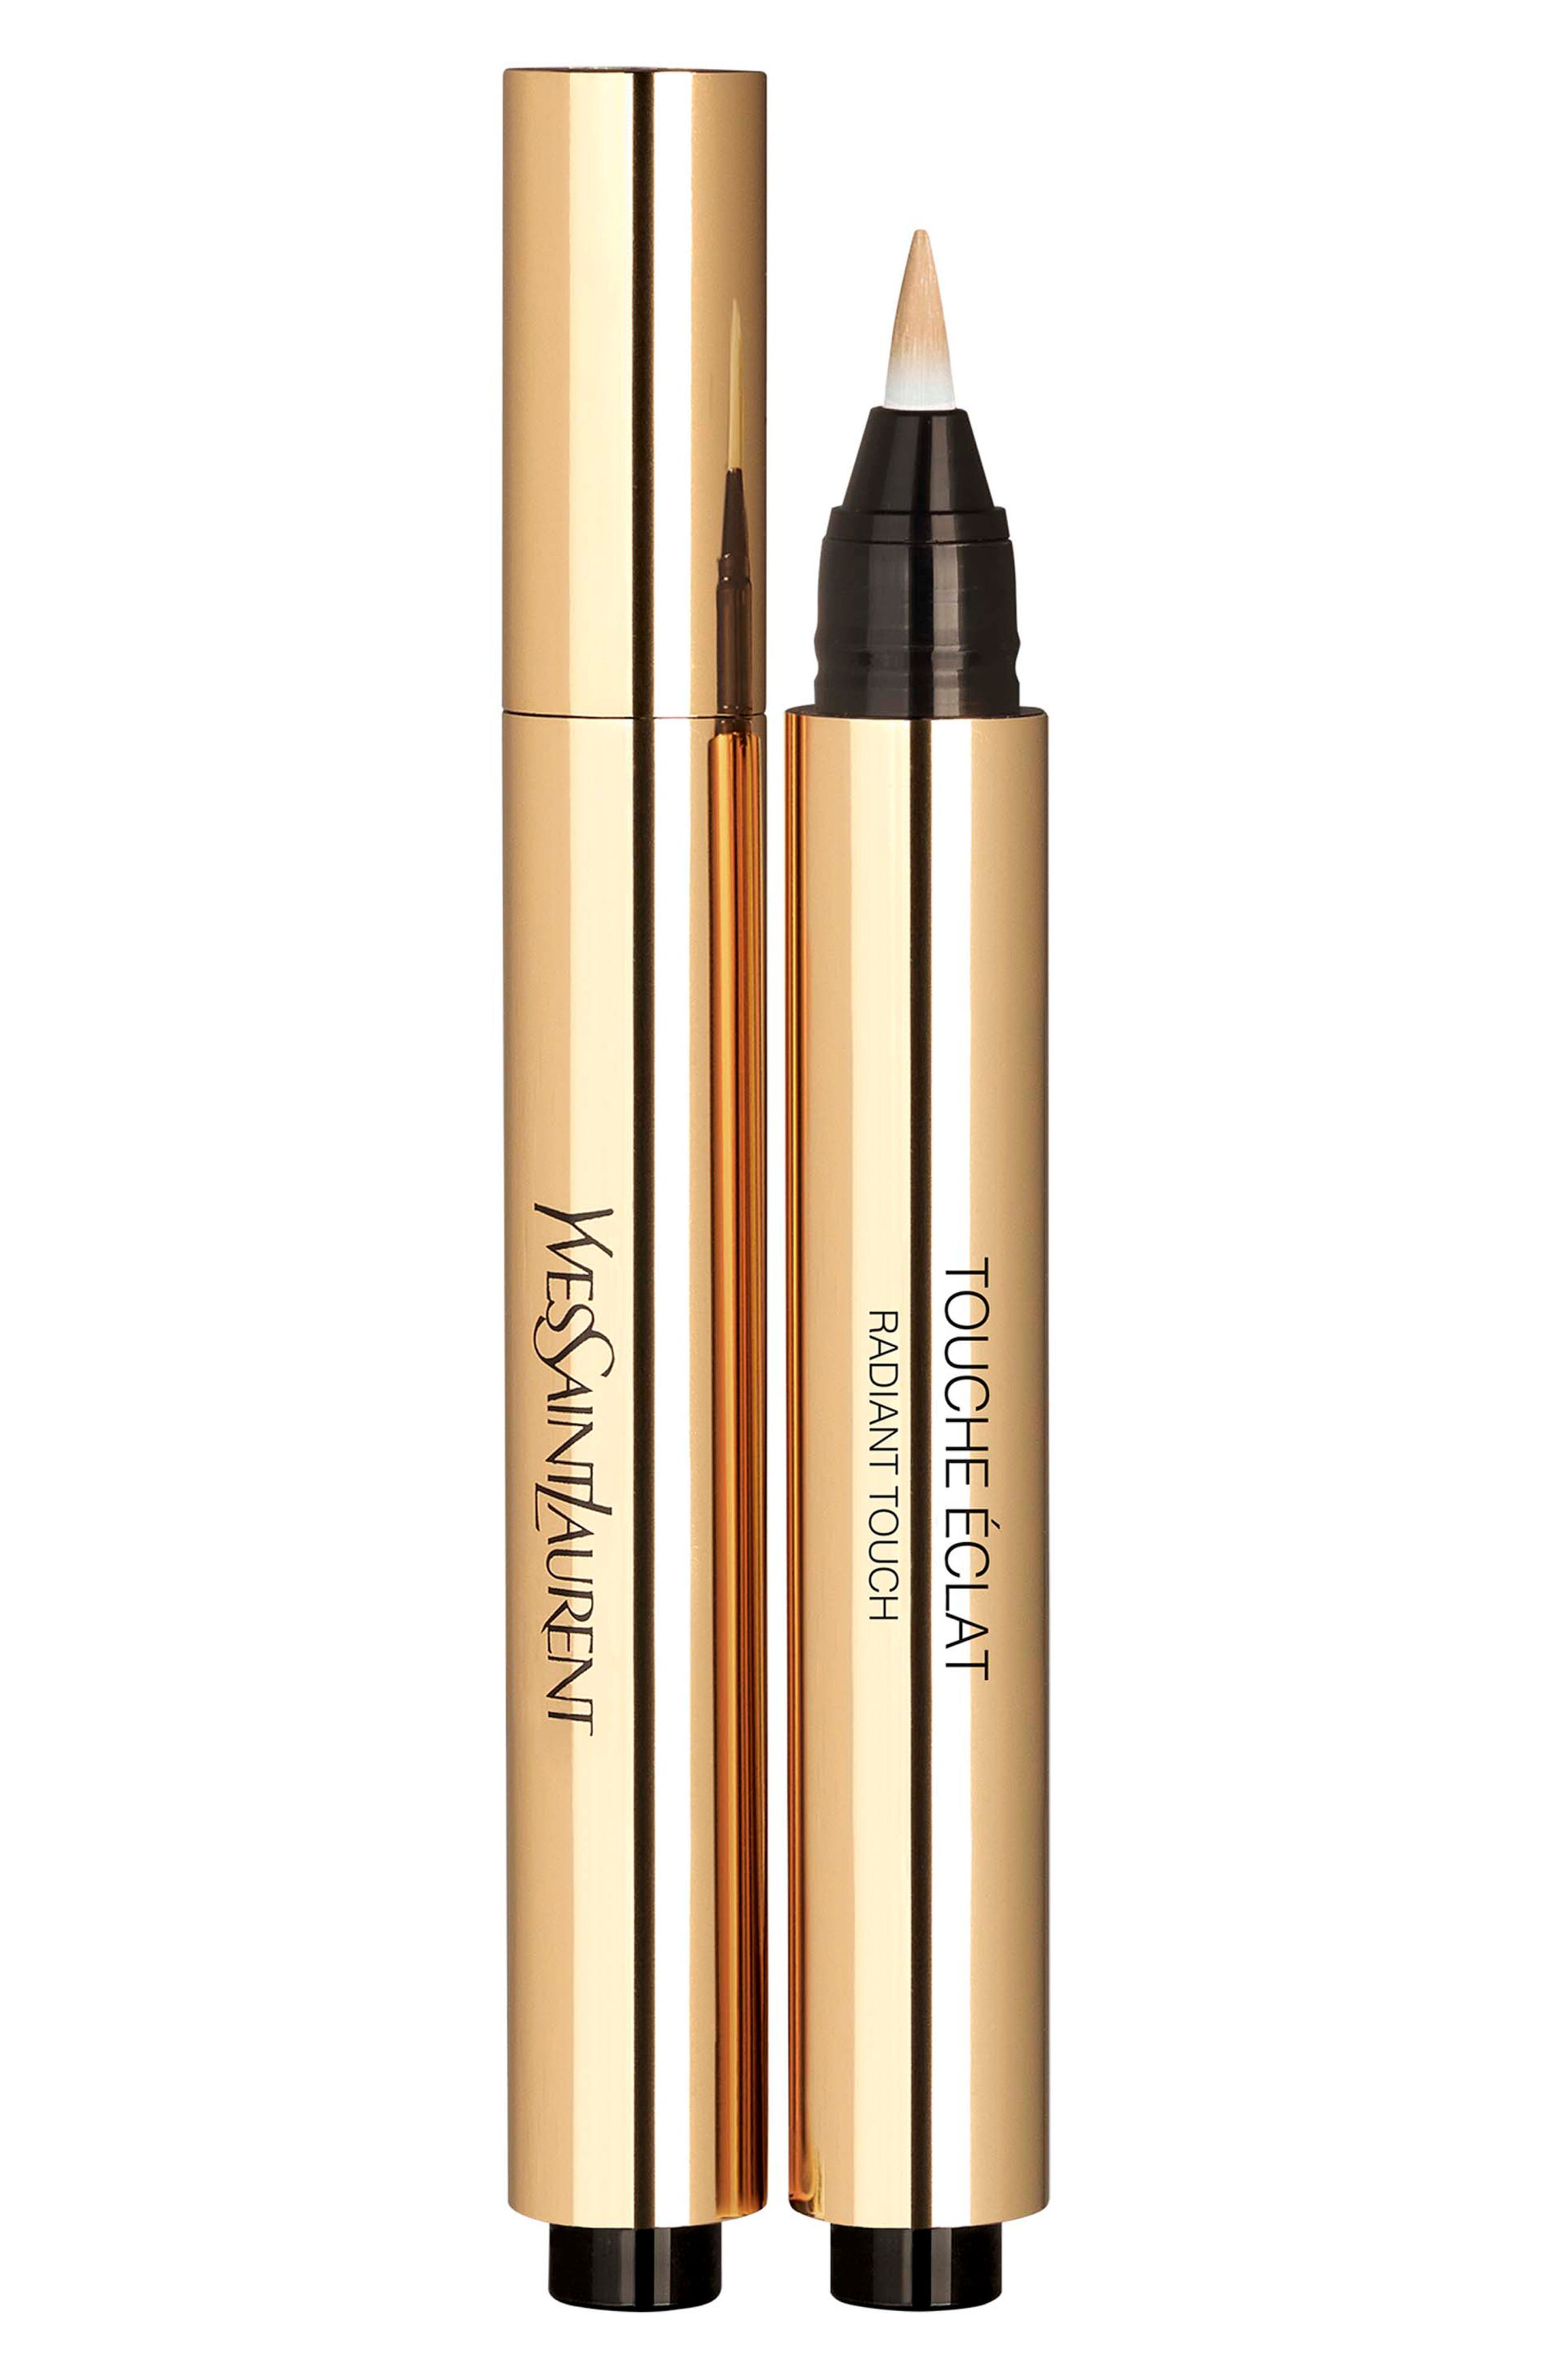 Yves Saint Laurent Touche Eclat All-Over Brightening Concealer Pen in 5.5 Luminous Praline